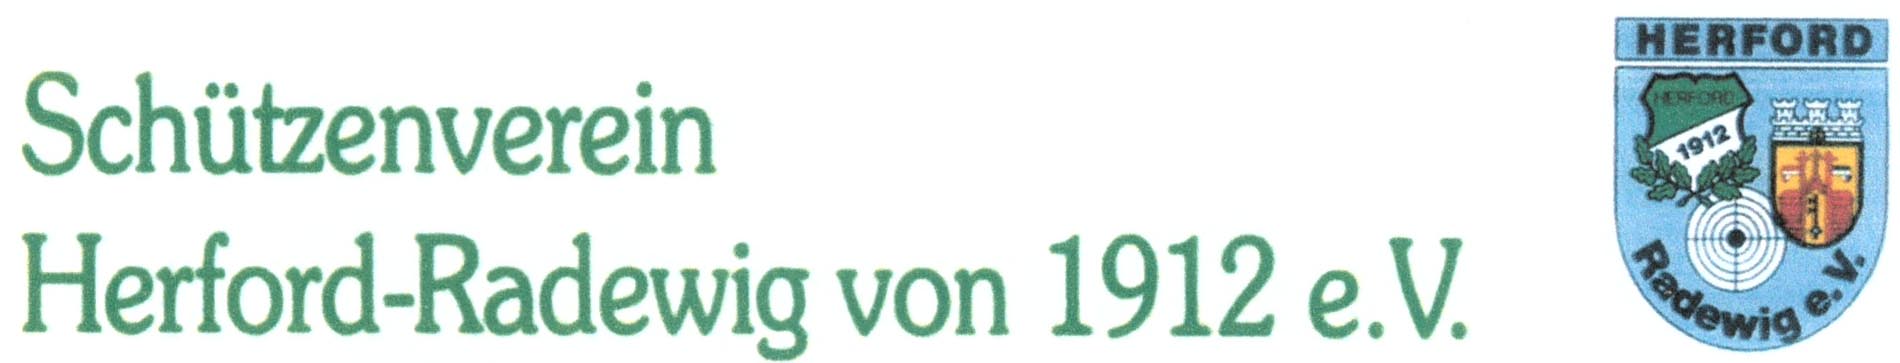 Einladung Schützenfest des Schützenvereins Herford-Radewig von 1912 e.V.